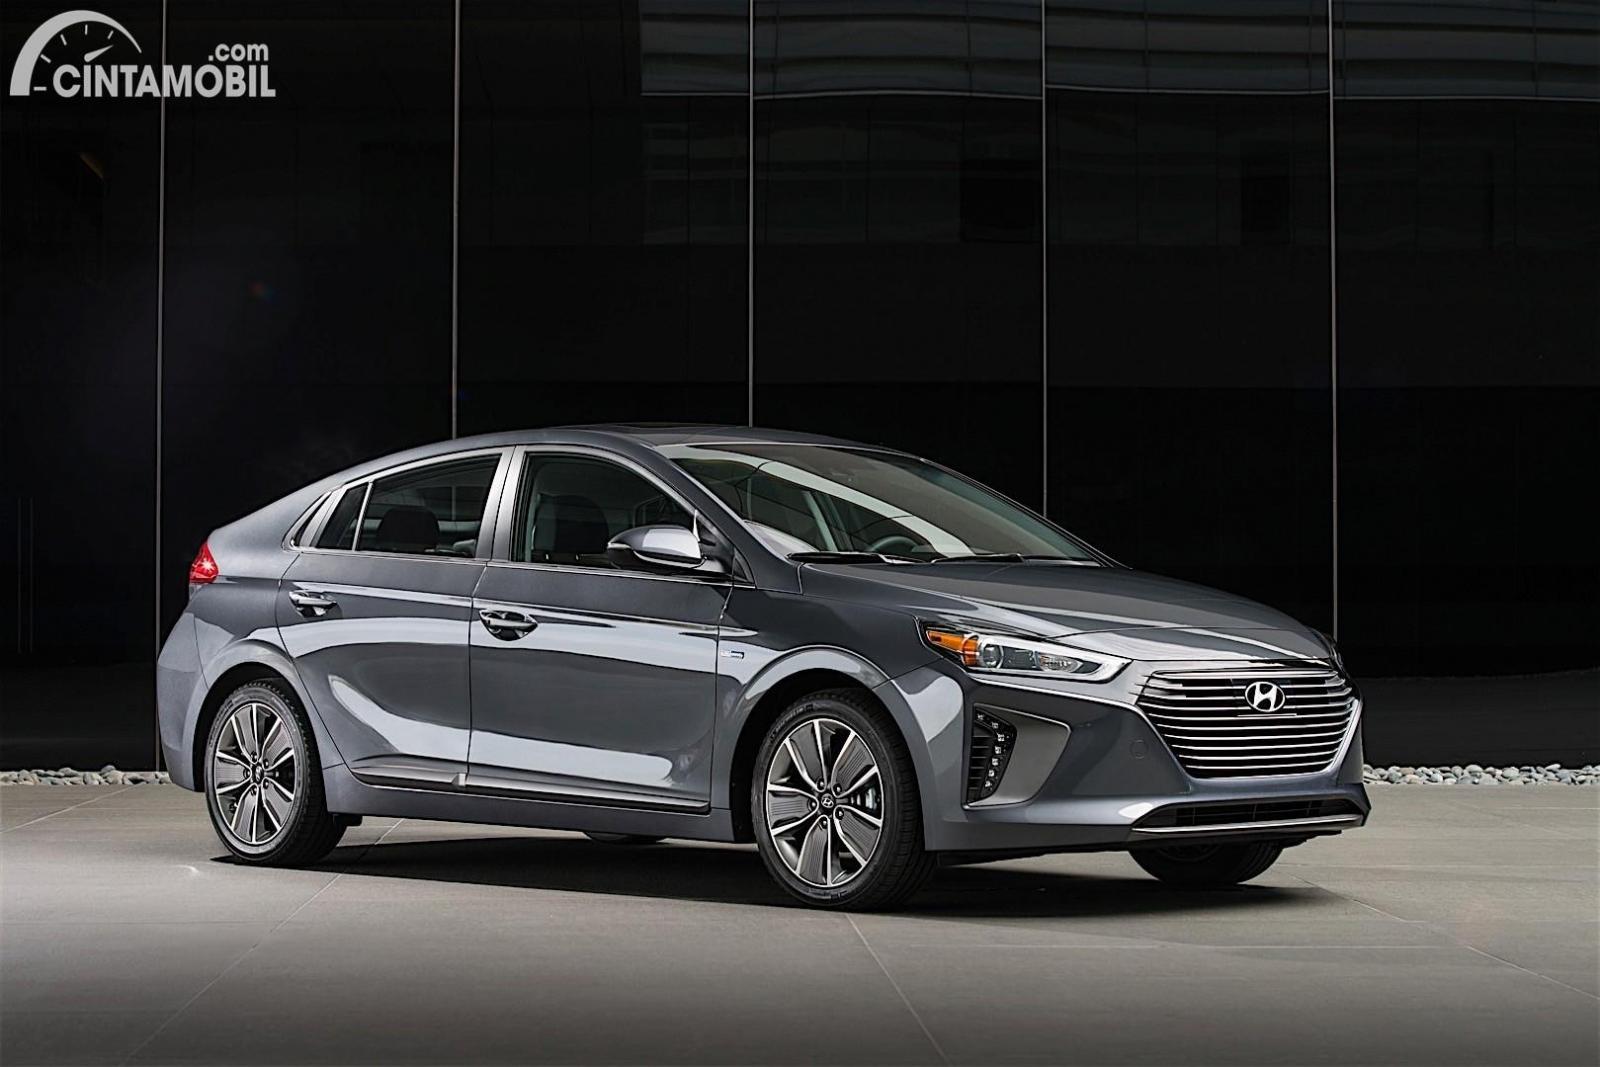 Gambar menunjukkan tampilan mobil Hyundai Ioniq 2016 berwarna silver dilihat dari sisi depan